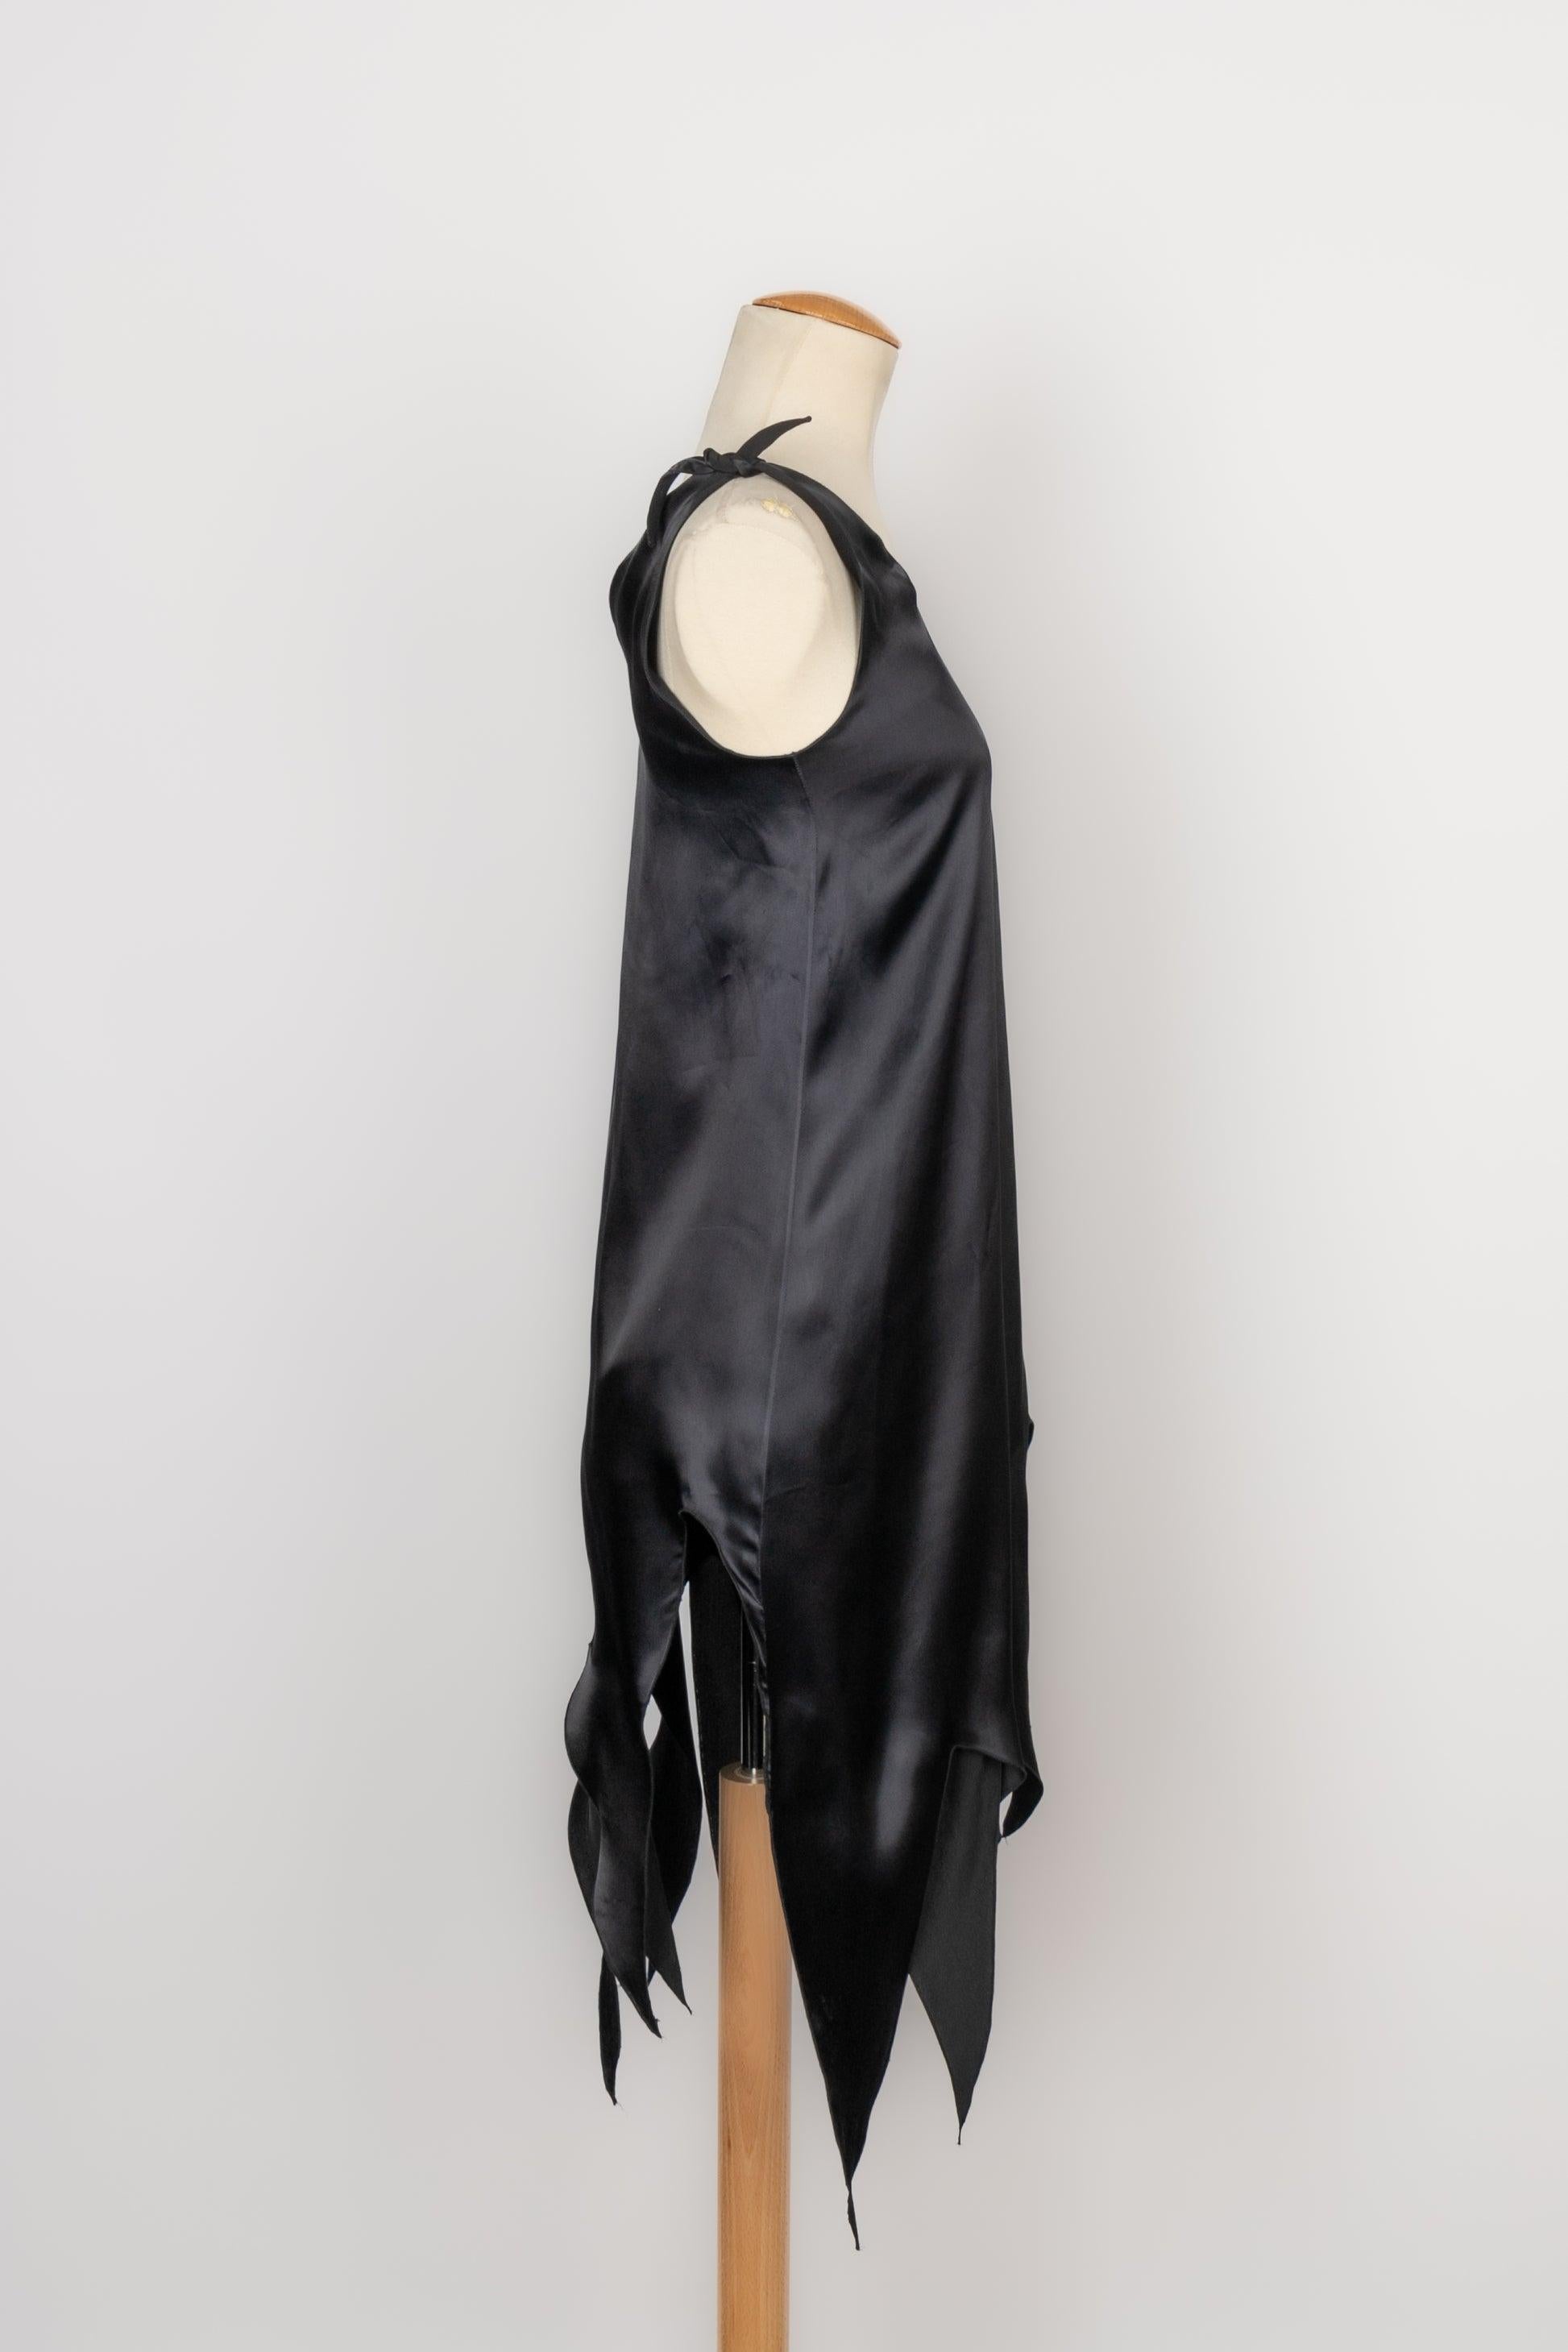 Givenchy - Asymmetrisches Kleid aus schwarzem Satin. Keine Größenangabe, es passt eine 36FR/38FR. Laufsteg-Model.

Zusätzliche Informationen:
Zustand: Sehr guter Zustand
Abmessungen: Brustkorb: 40 cm - Länge: 88 cm bis 117 cm

Sellers Referenz: VR223